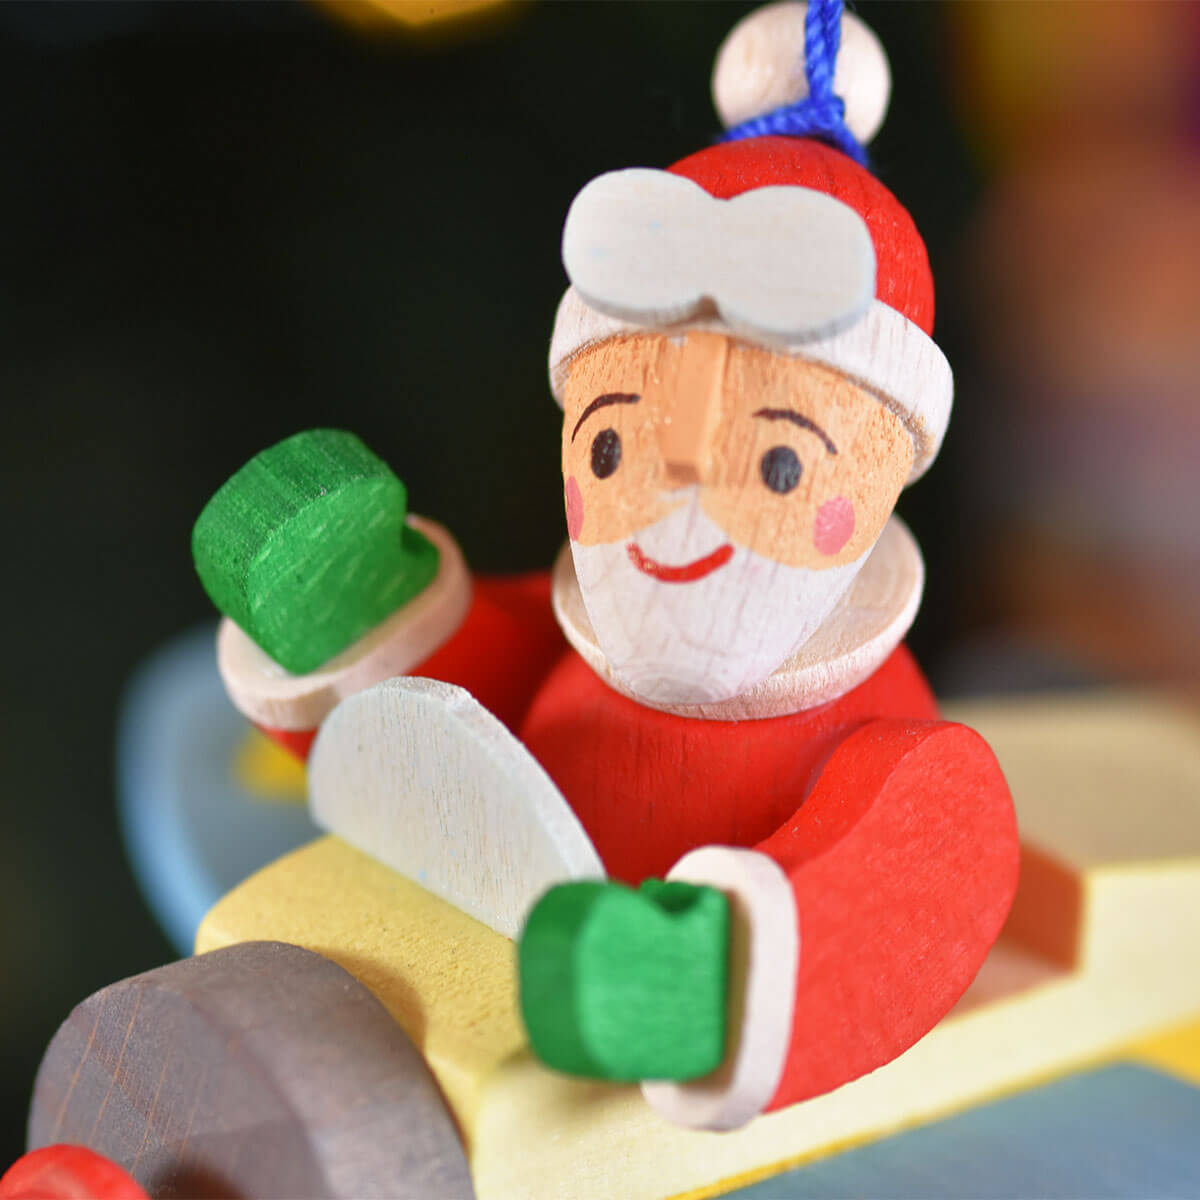 Santa Claus in the Plane Ornament